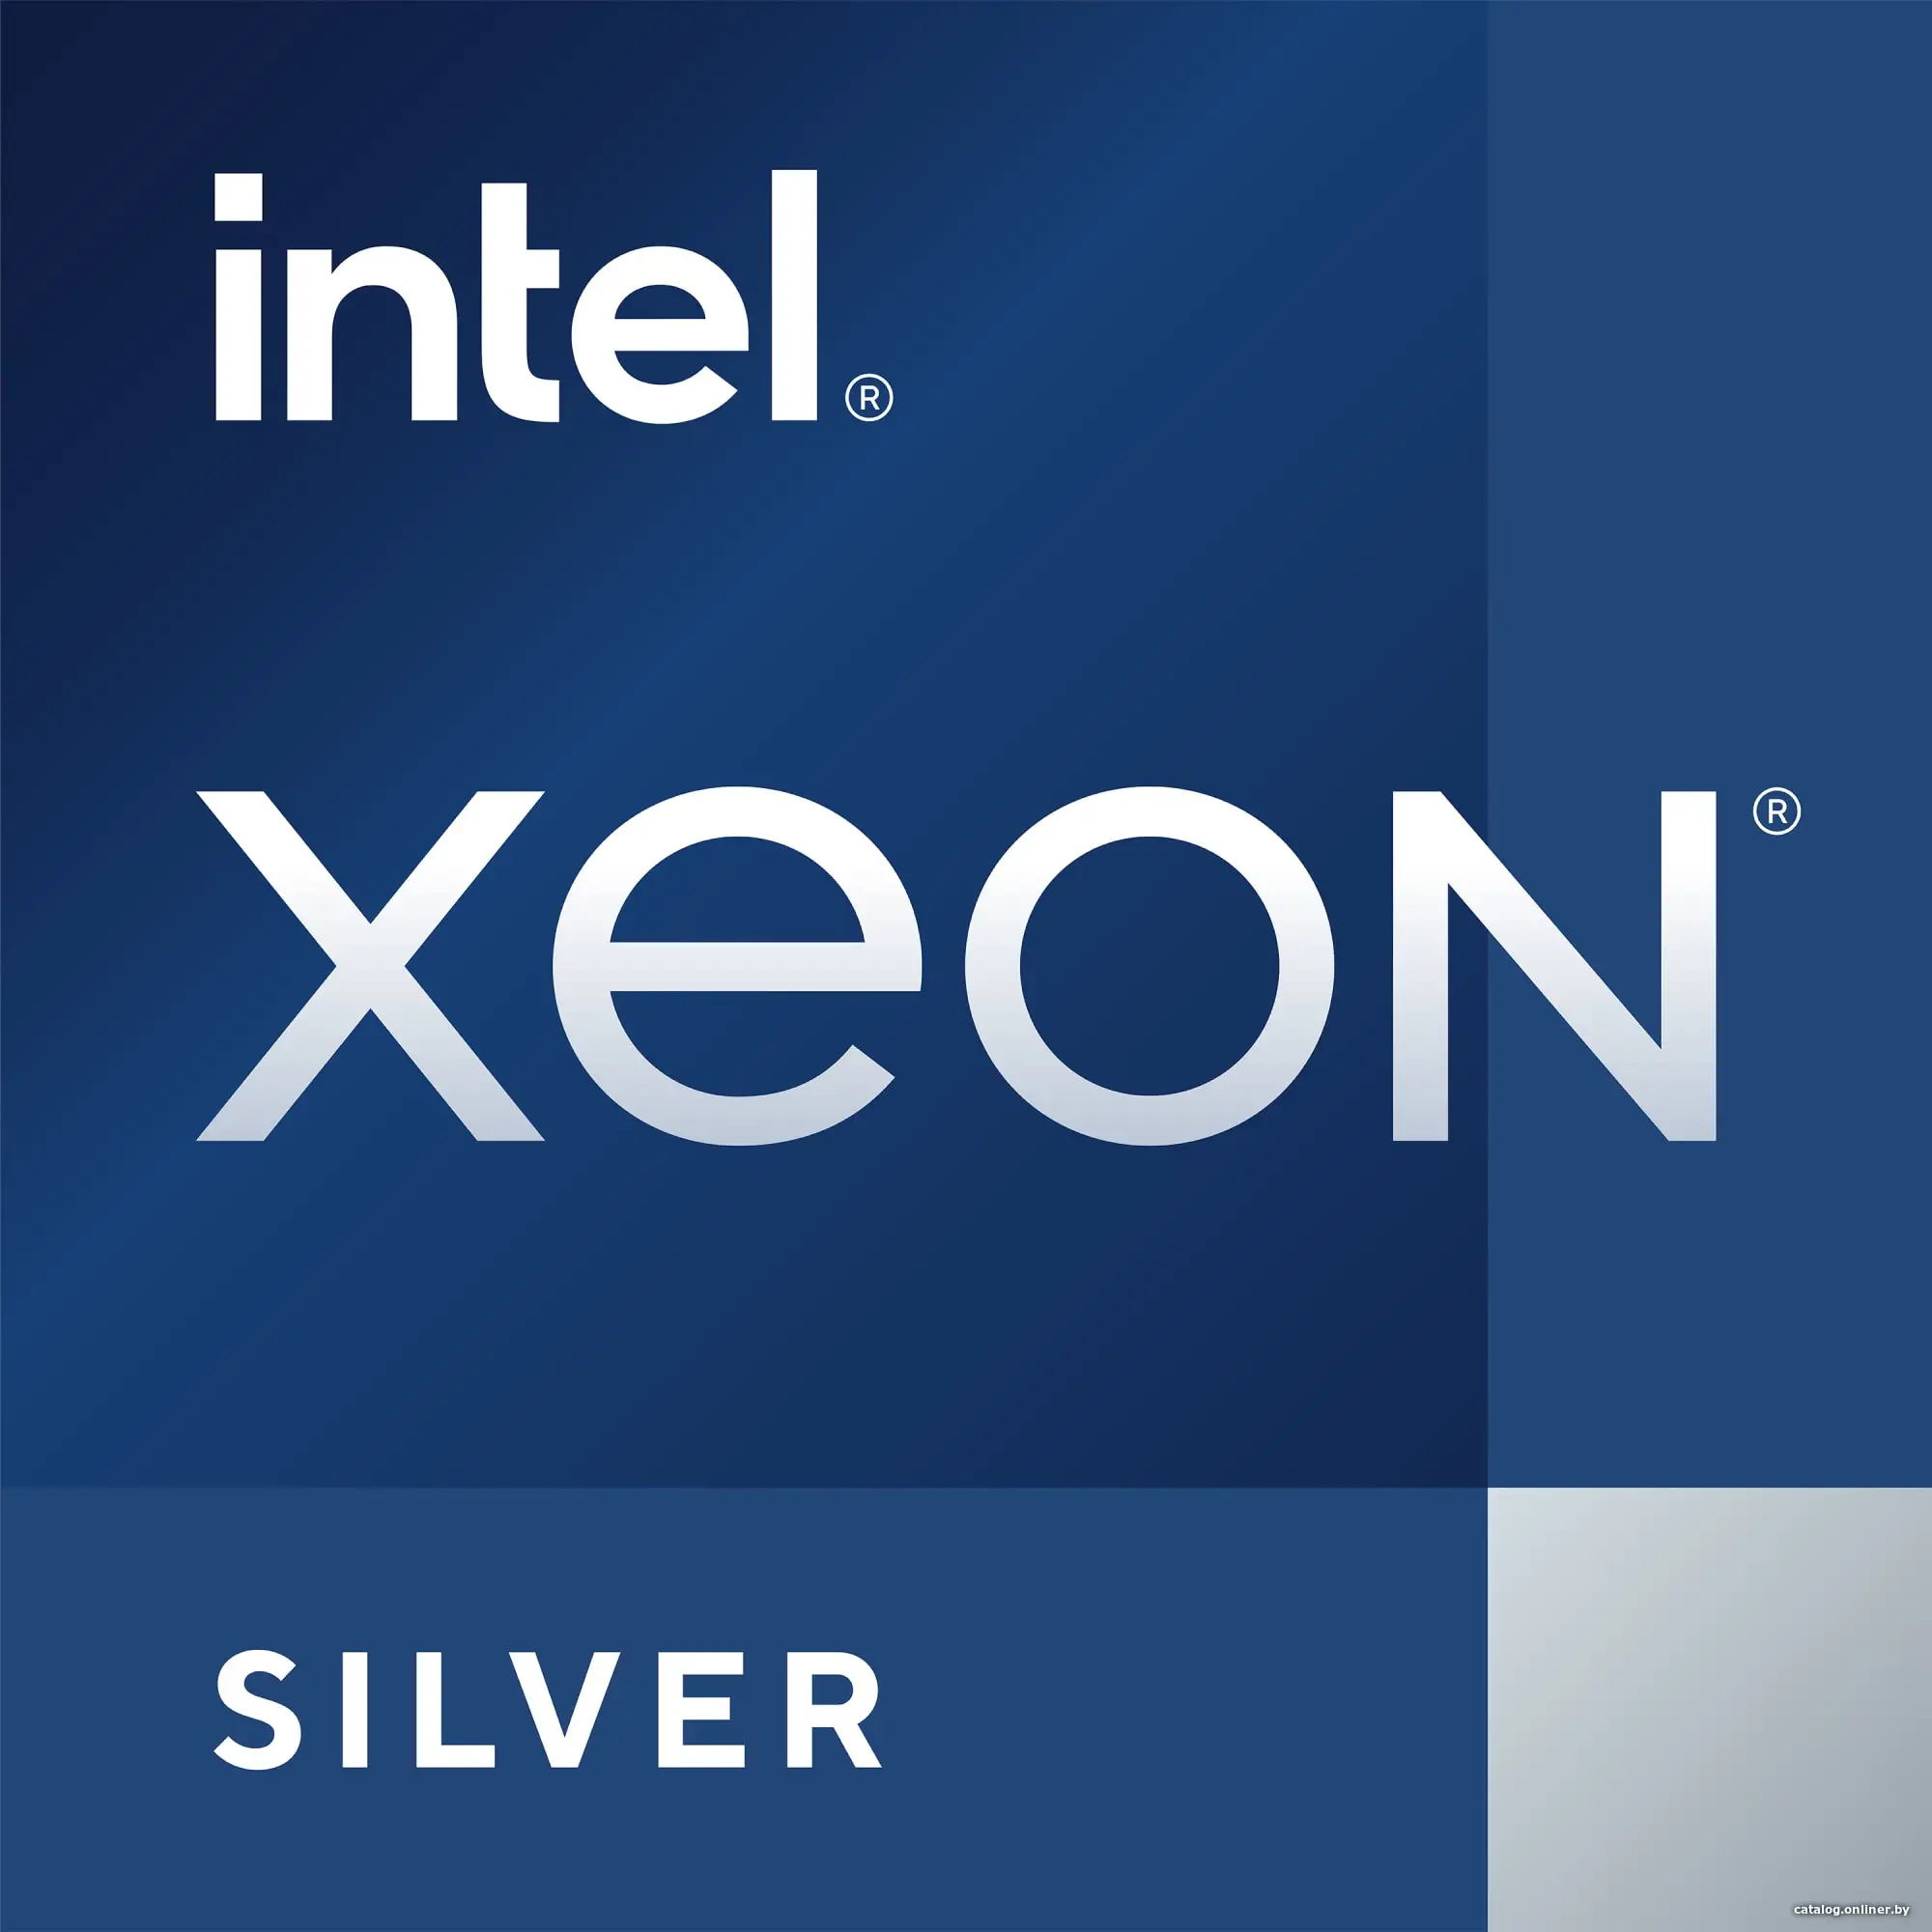 Купить Intel Xeon® Silver 4309Y 8 Cores, 16 Threads, 2.8/3.6GHz, 12M, DDR4-2666, 6TB, 2S, 105W, цена, опт и розница